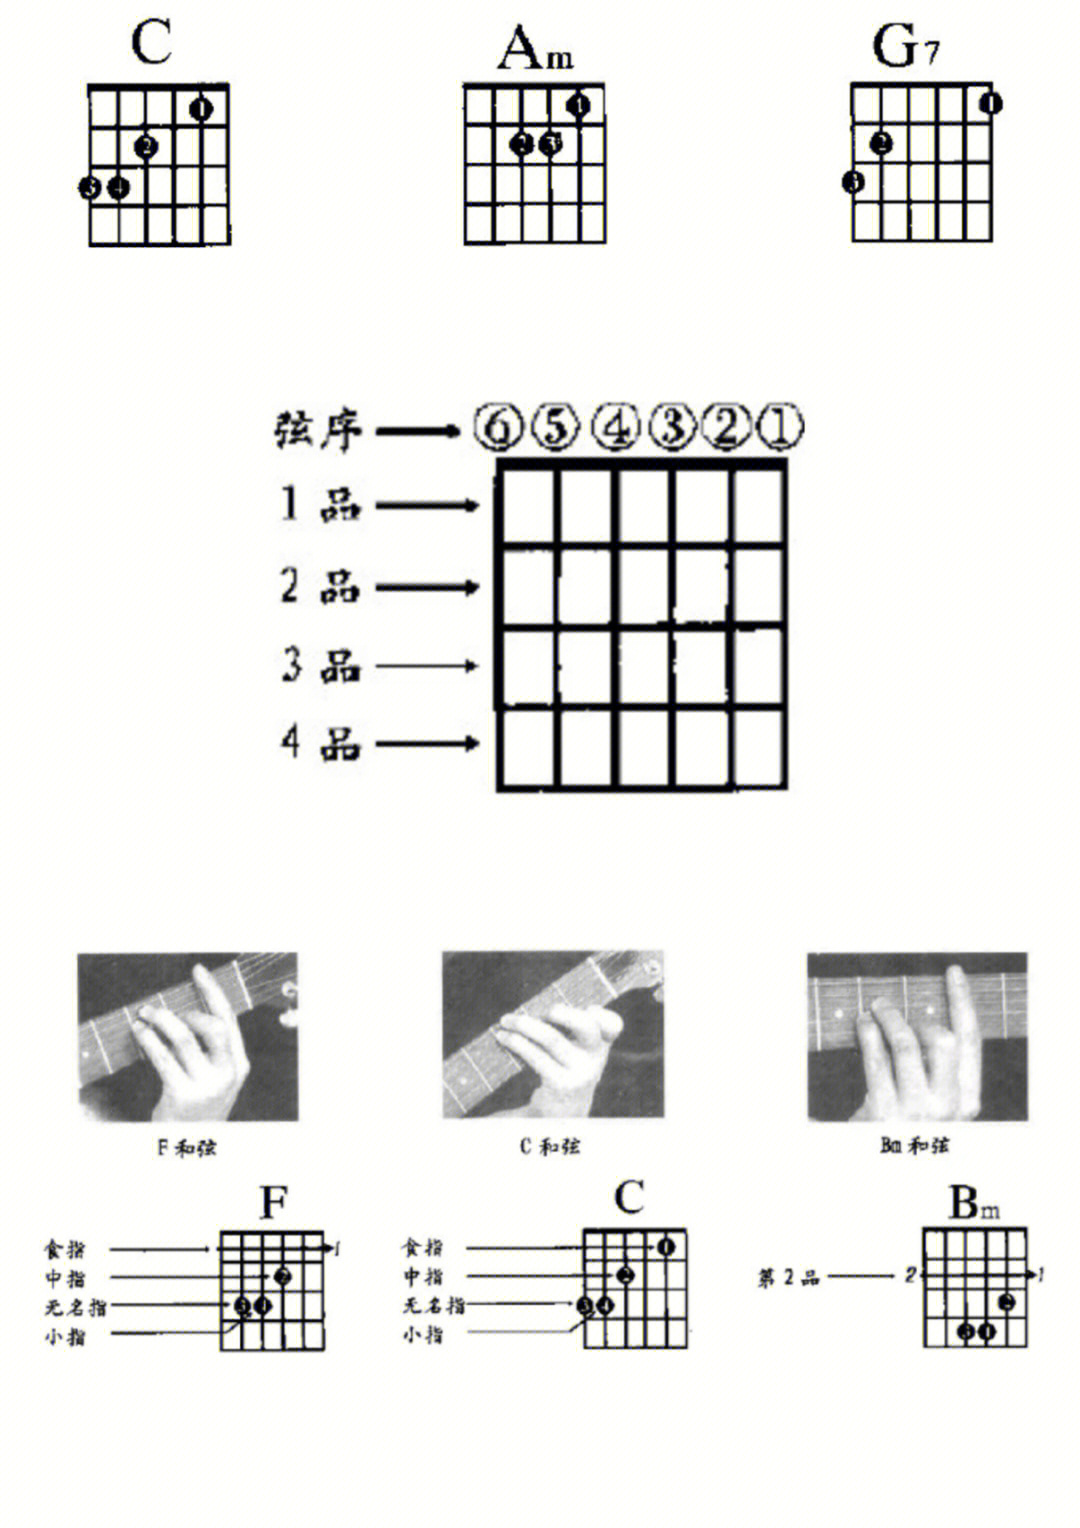 16615和弦图与吉他92的对照:和弦图是表示左手所按和弦的指法及